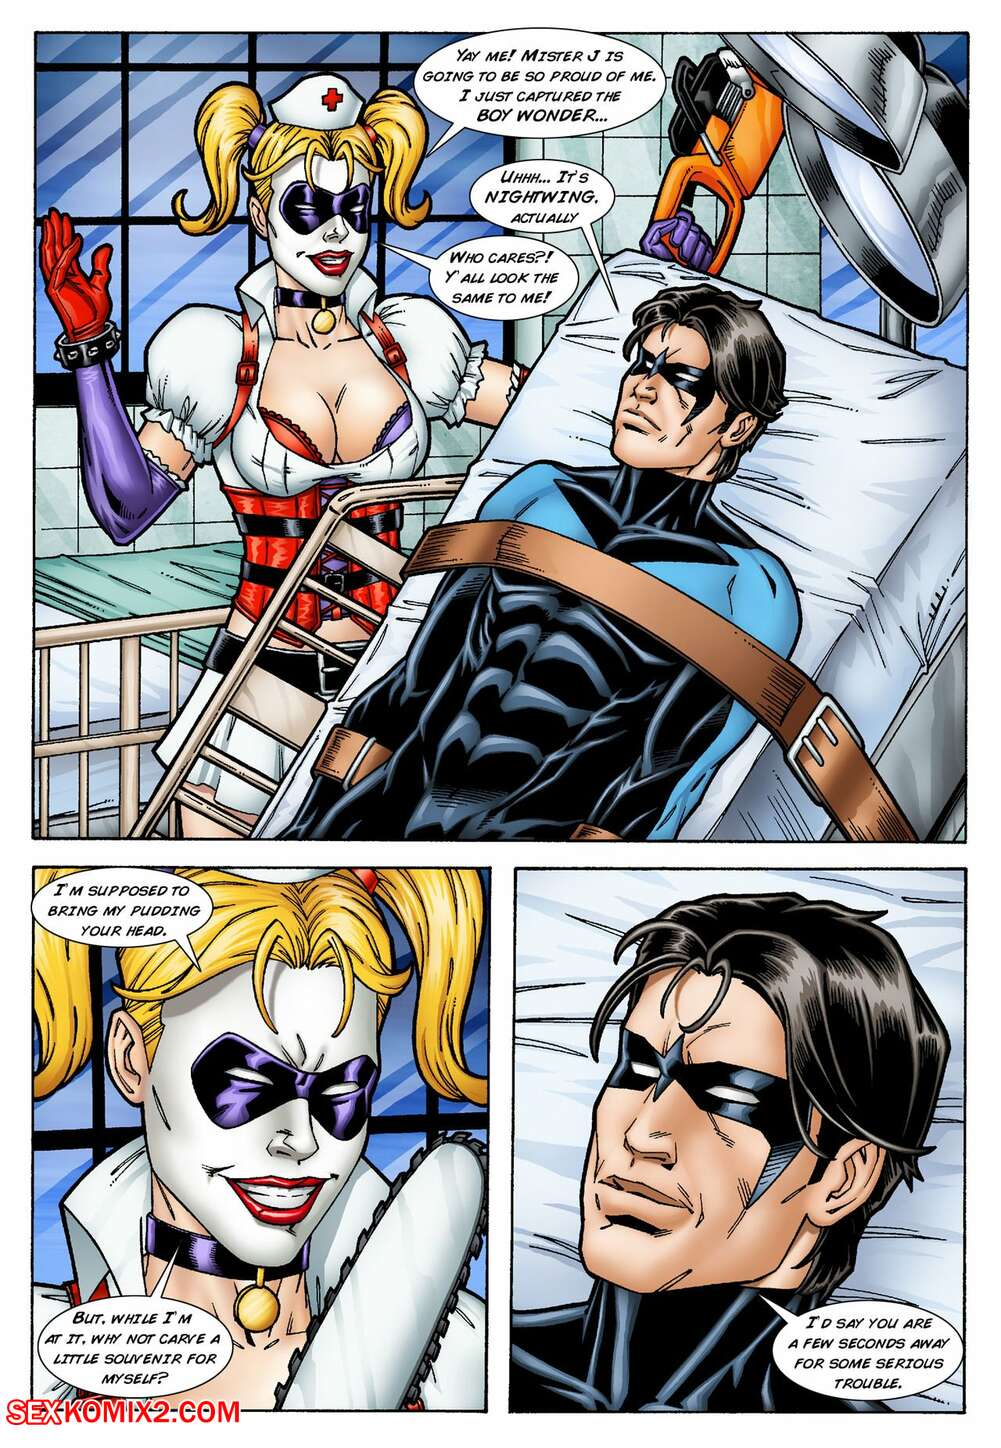 carliss hyde recommends batman cartoon porn comics pic